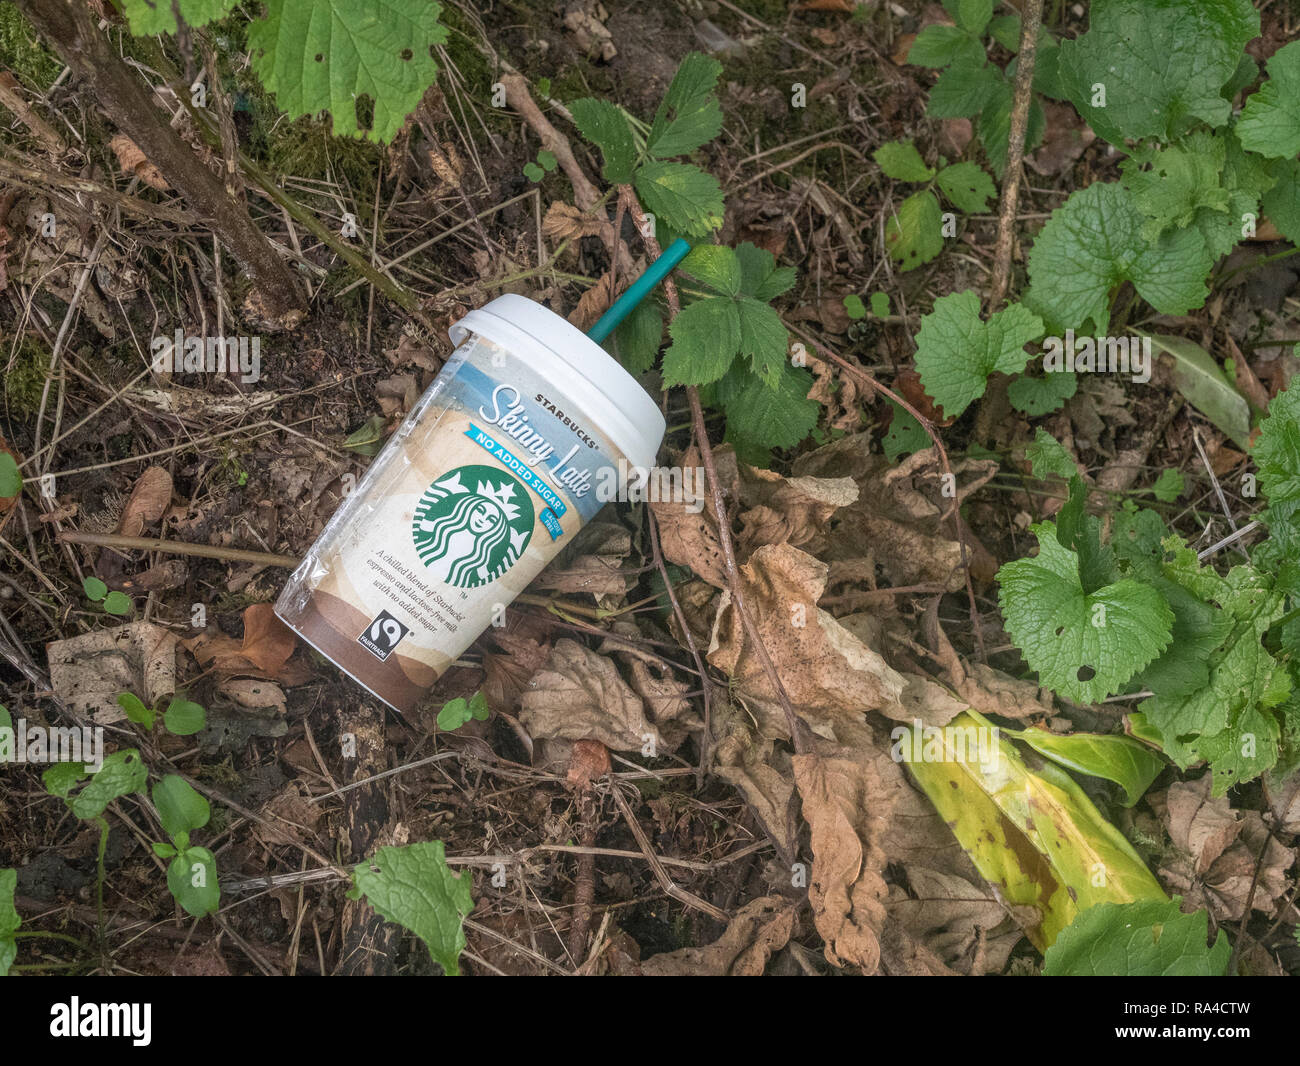 Descartan desgastado plástico Starbucks Coffee Cup para llevar visto en Cornualles seto en la carretera. Guerra de plástico, plástico contaminación, contaminando el medio ambiente. Foto de stock